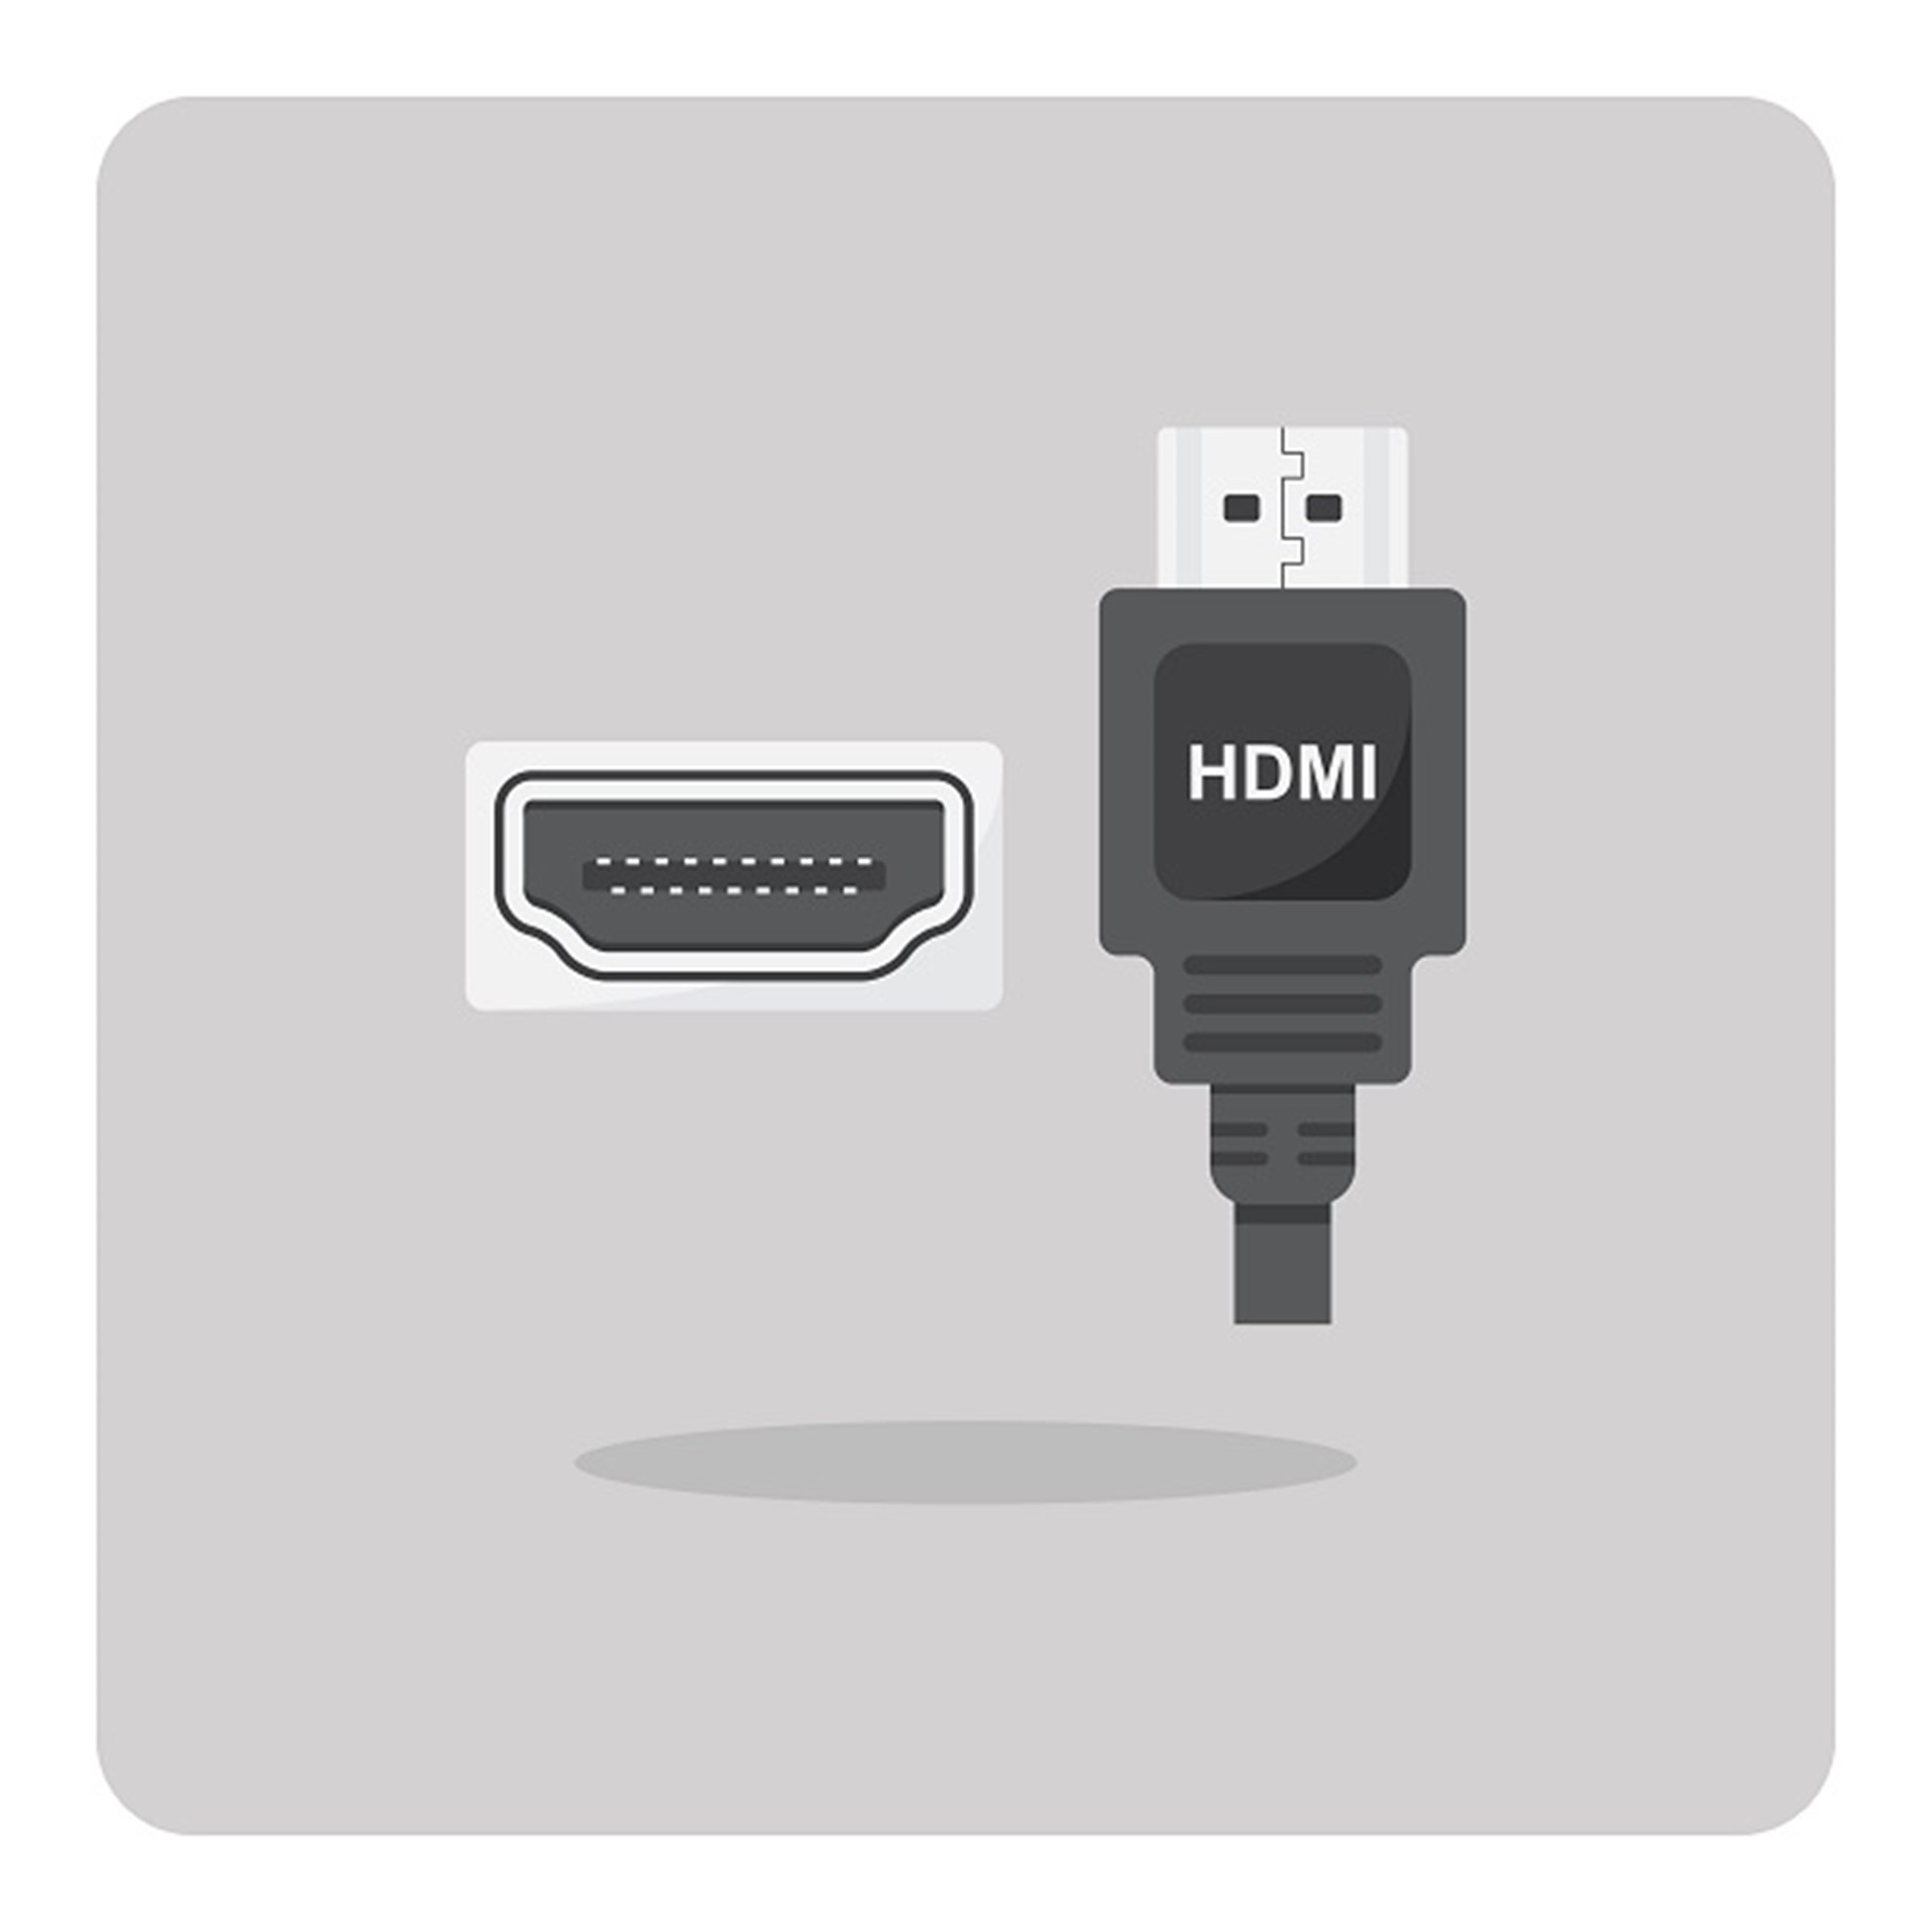 شناخت و کاربرد کابل HDMI